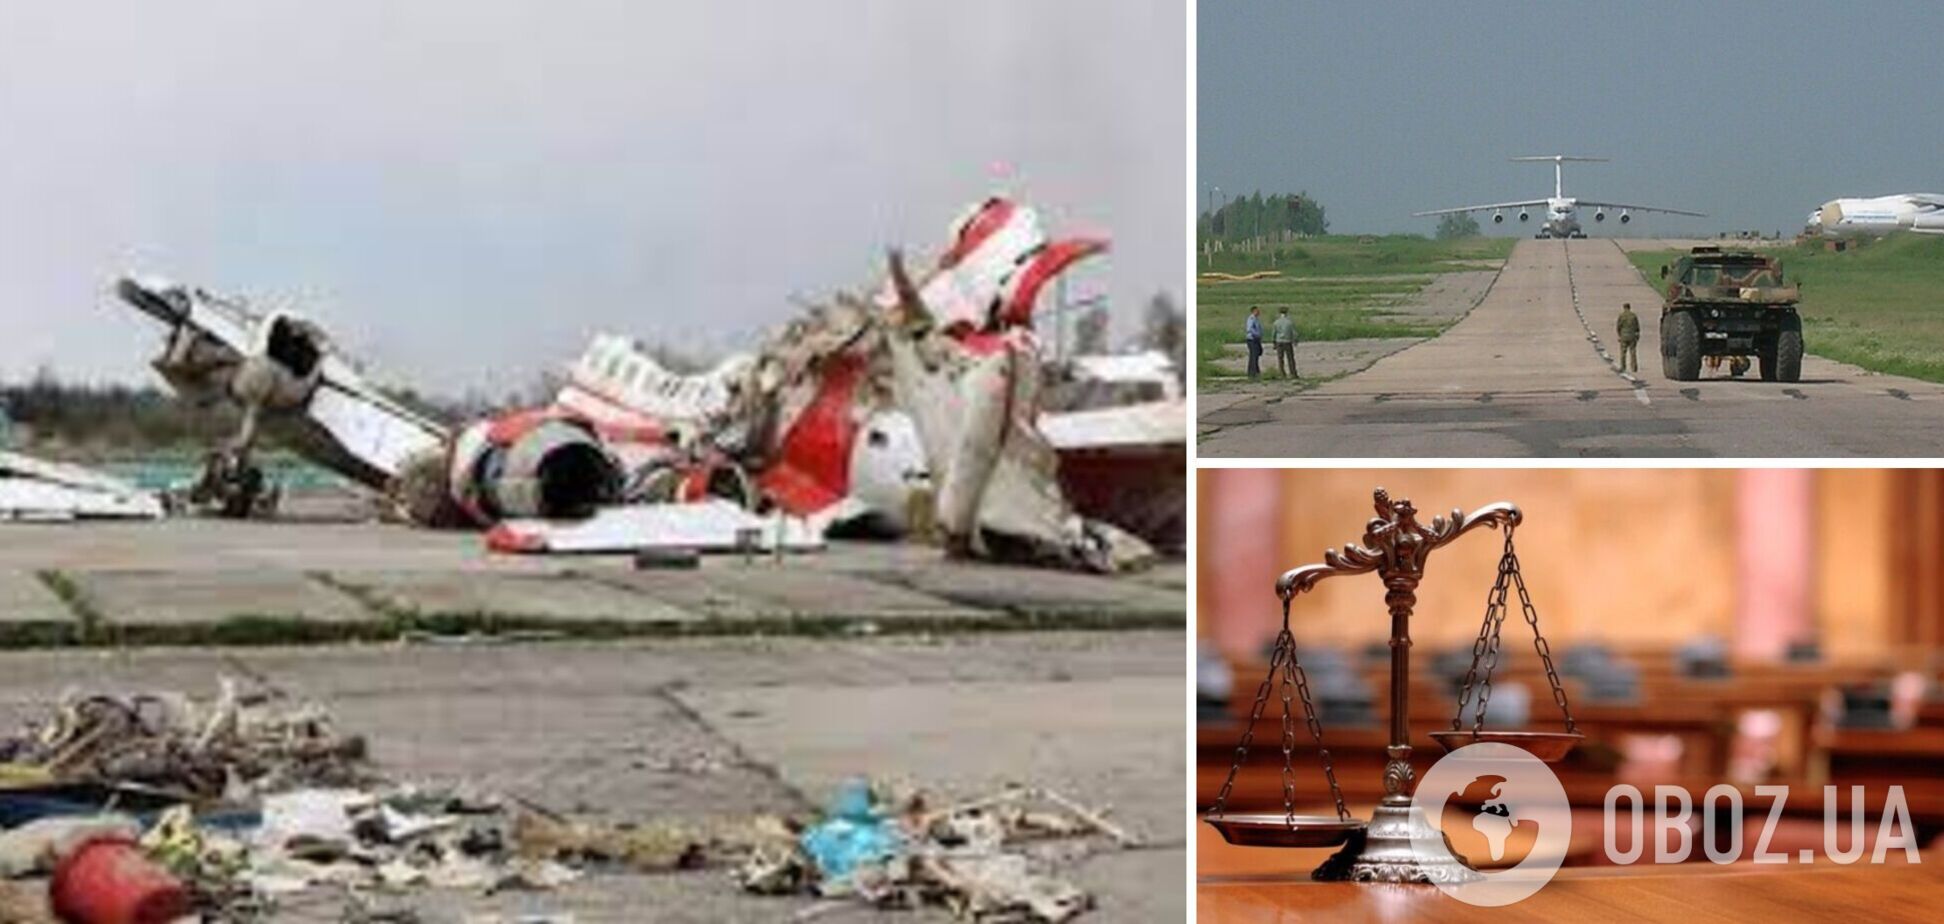 У Польщі винесли рішення про арешт інспектора, що чергував під час аварії літака у Смоленську